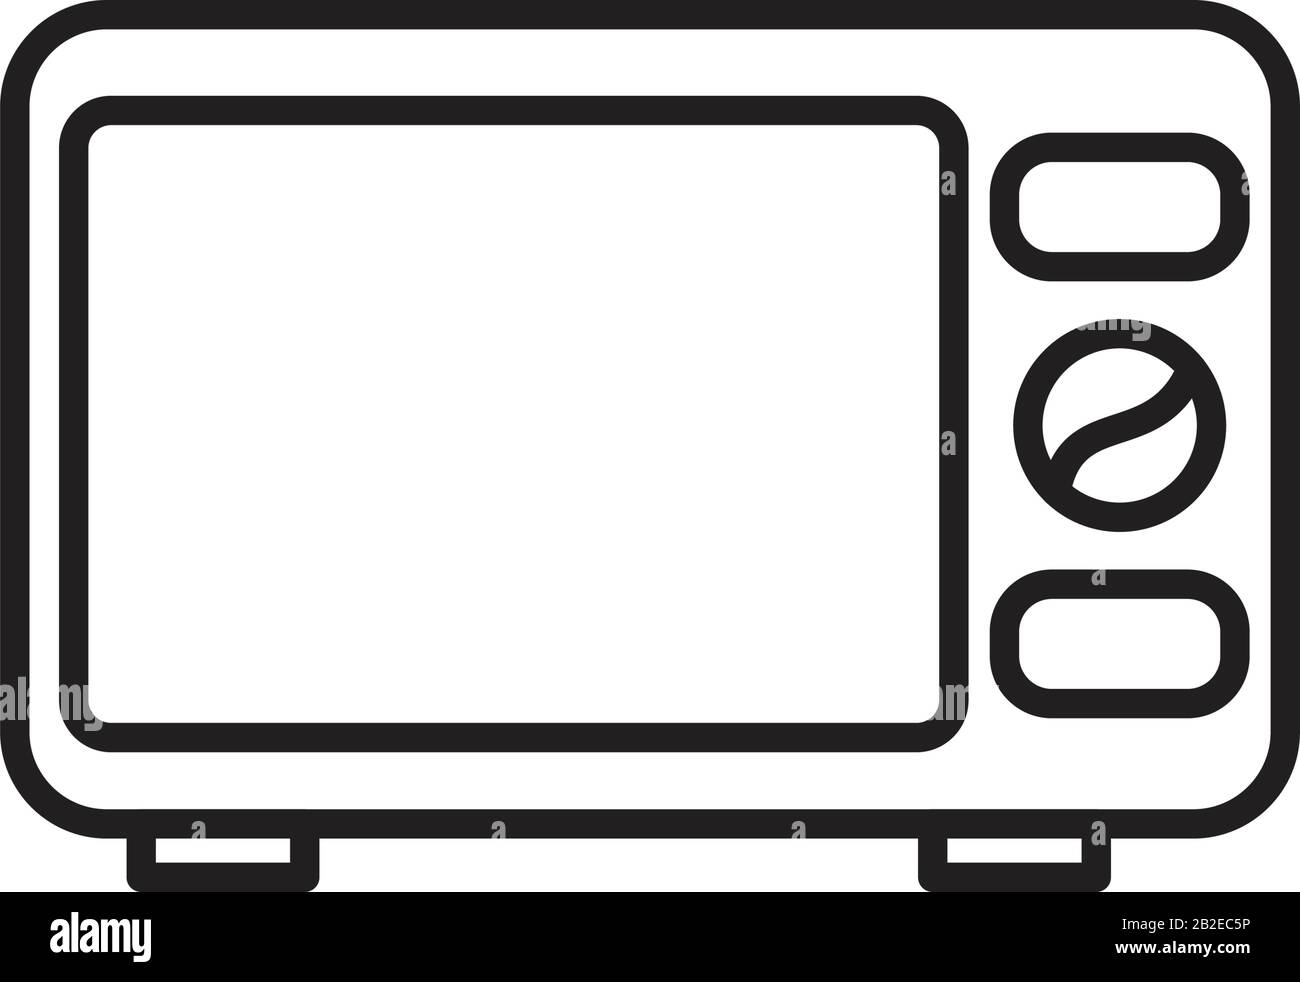 Mikrowellenofen - Symbolvorlage in schwarzer Farbe editierbar. Symbol für Mikrowellenofen Symbol für flache Vektorgrafiken für Grafik- und Webdesign. Stock Vektor